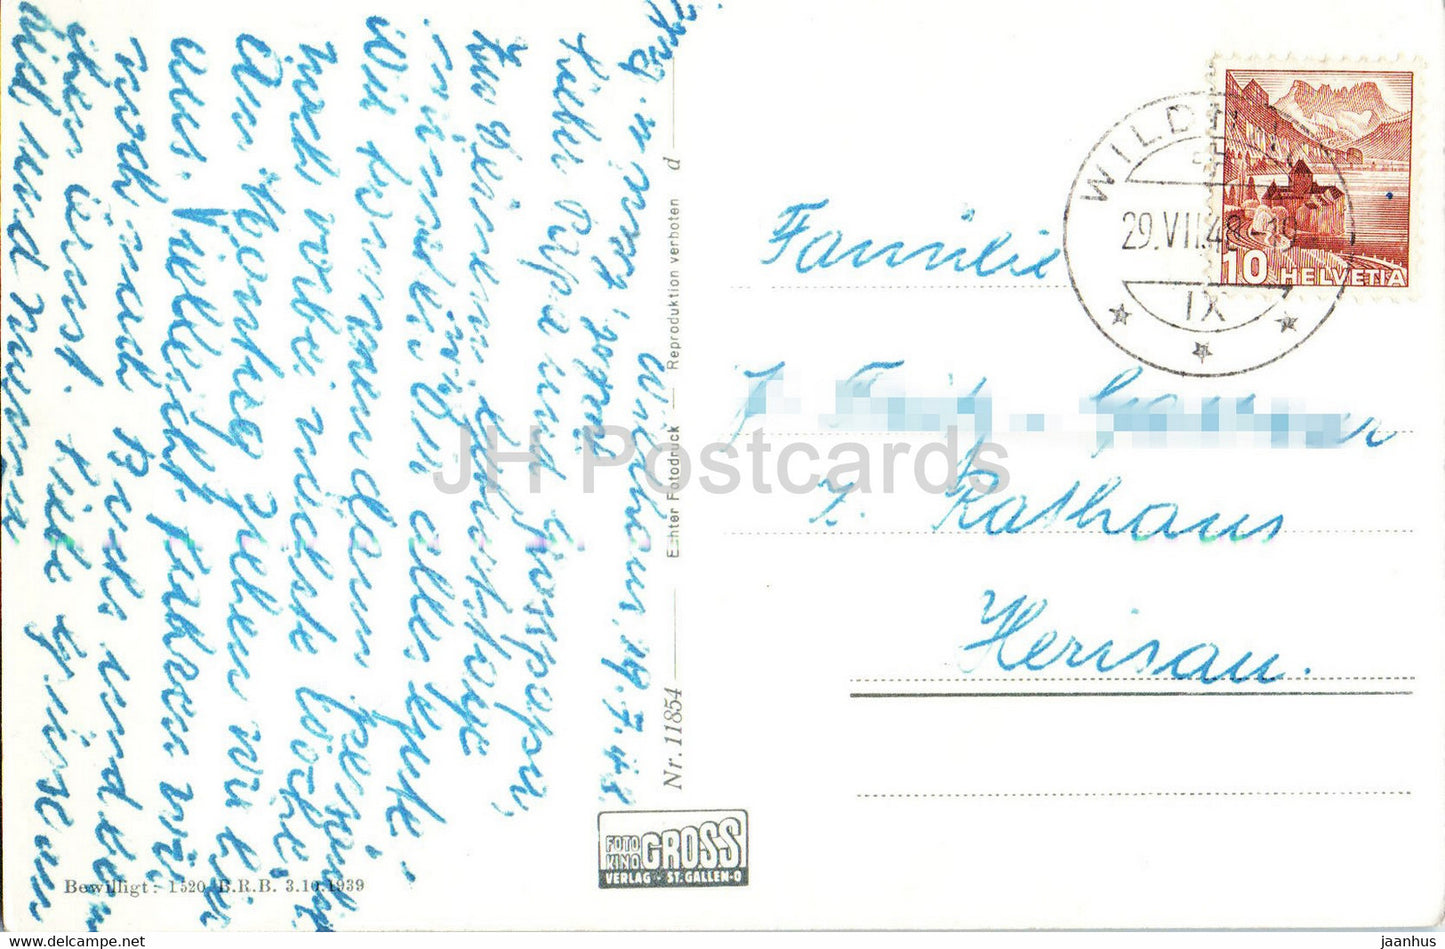 Santis mit Schafberg vom Aelpli Togg aus Abendstimmung - 11854 - 1948 - old postcard - Switzerland - used